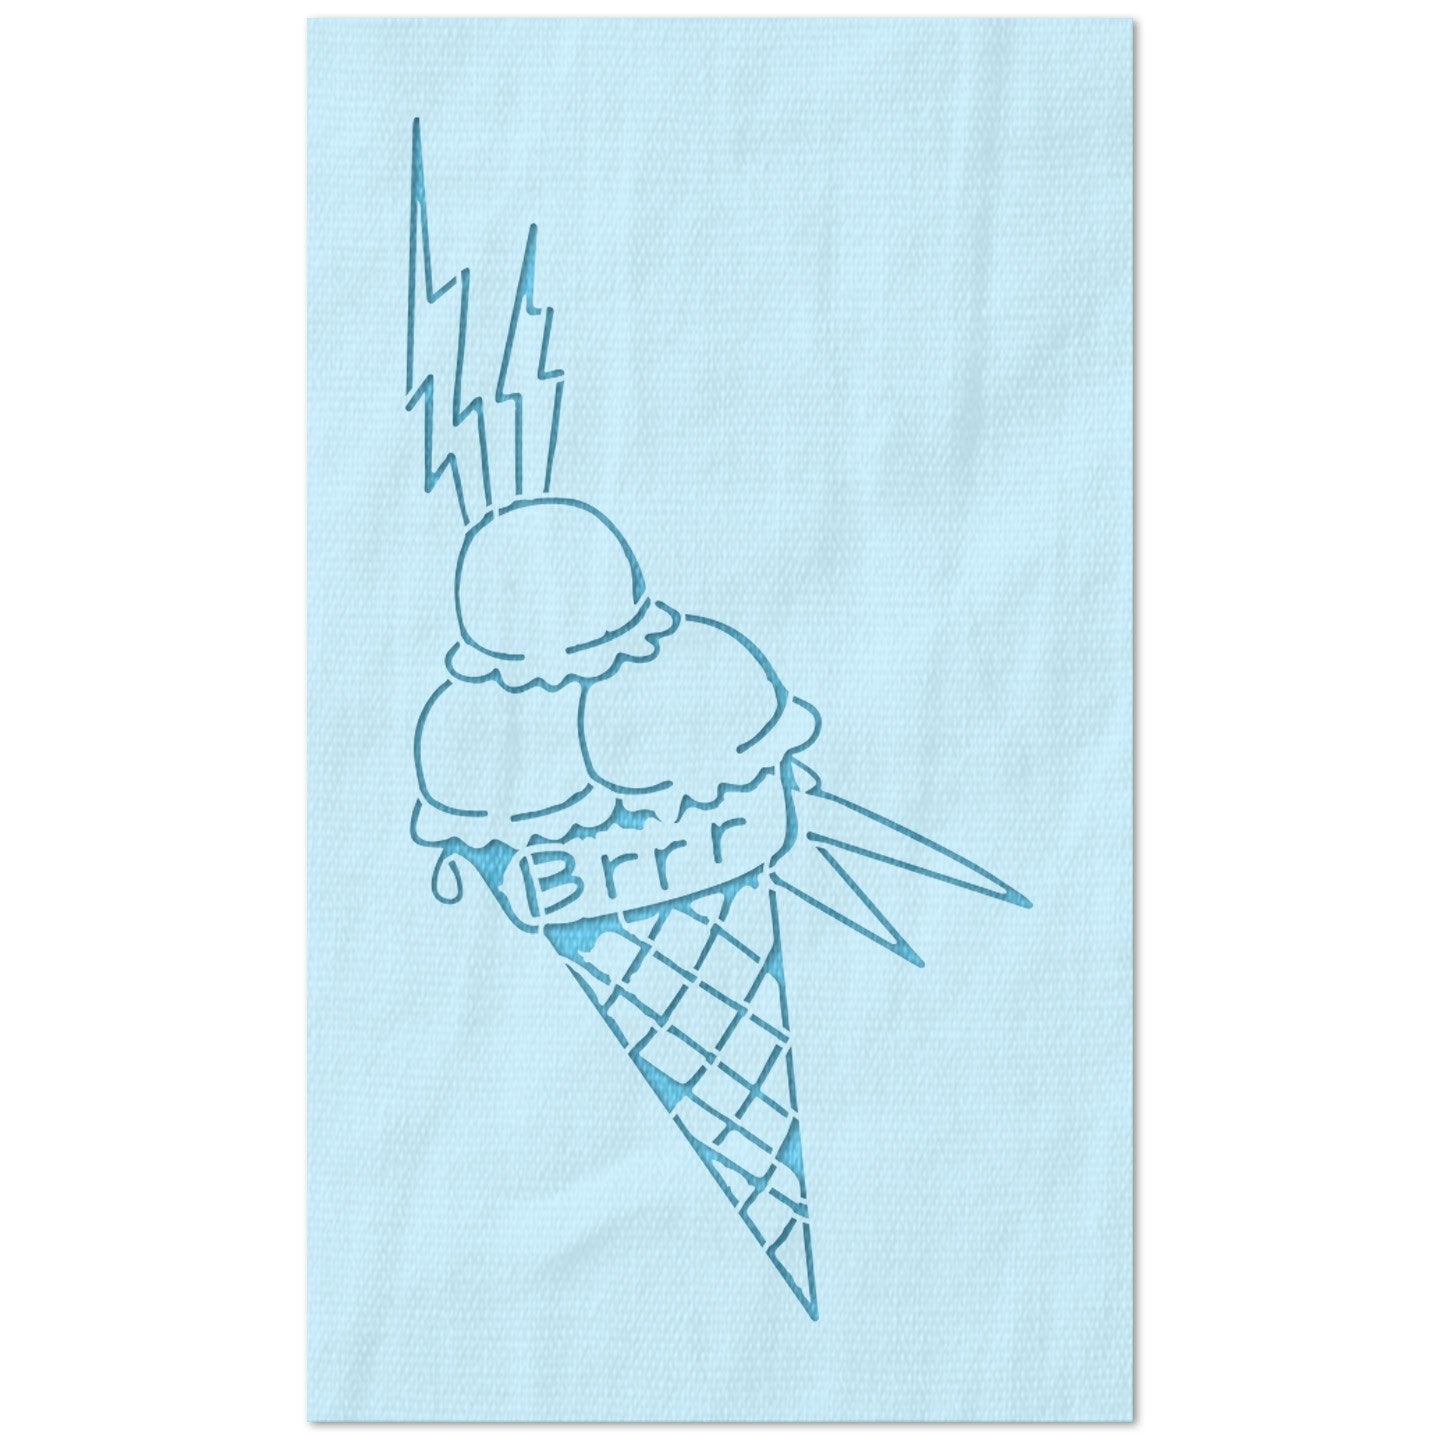 Gucci Mane Brrr Ice Cream Cone Tattoo Stencil